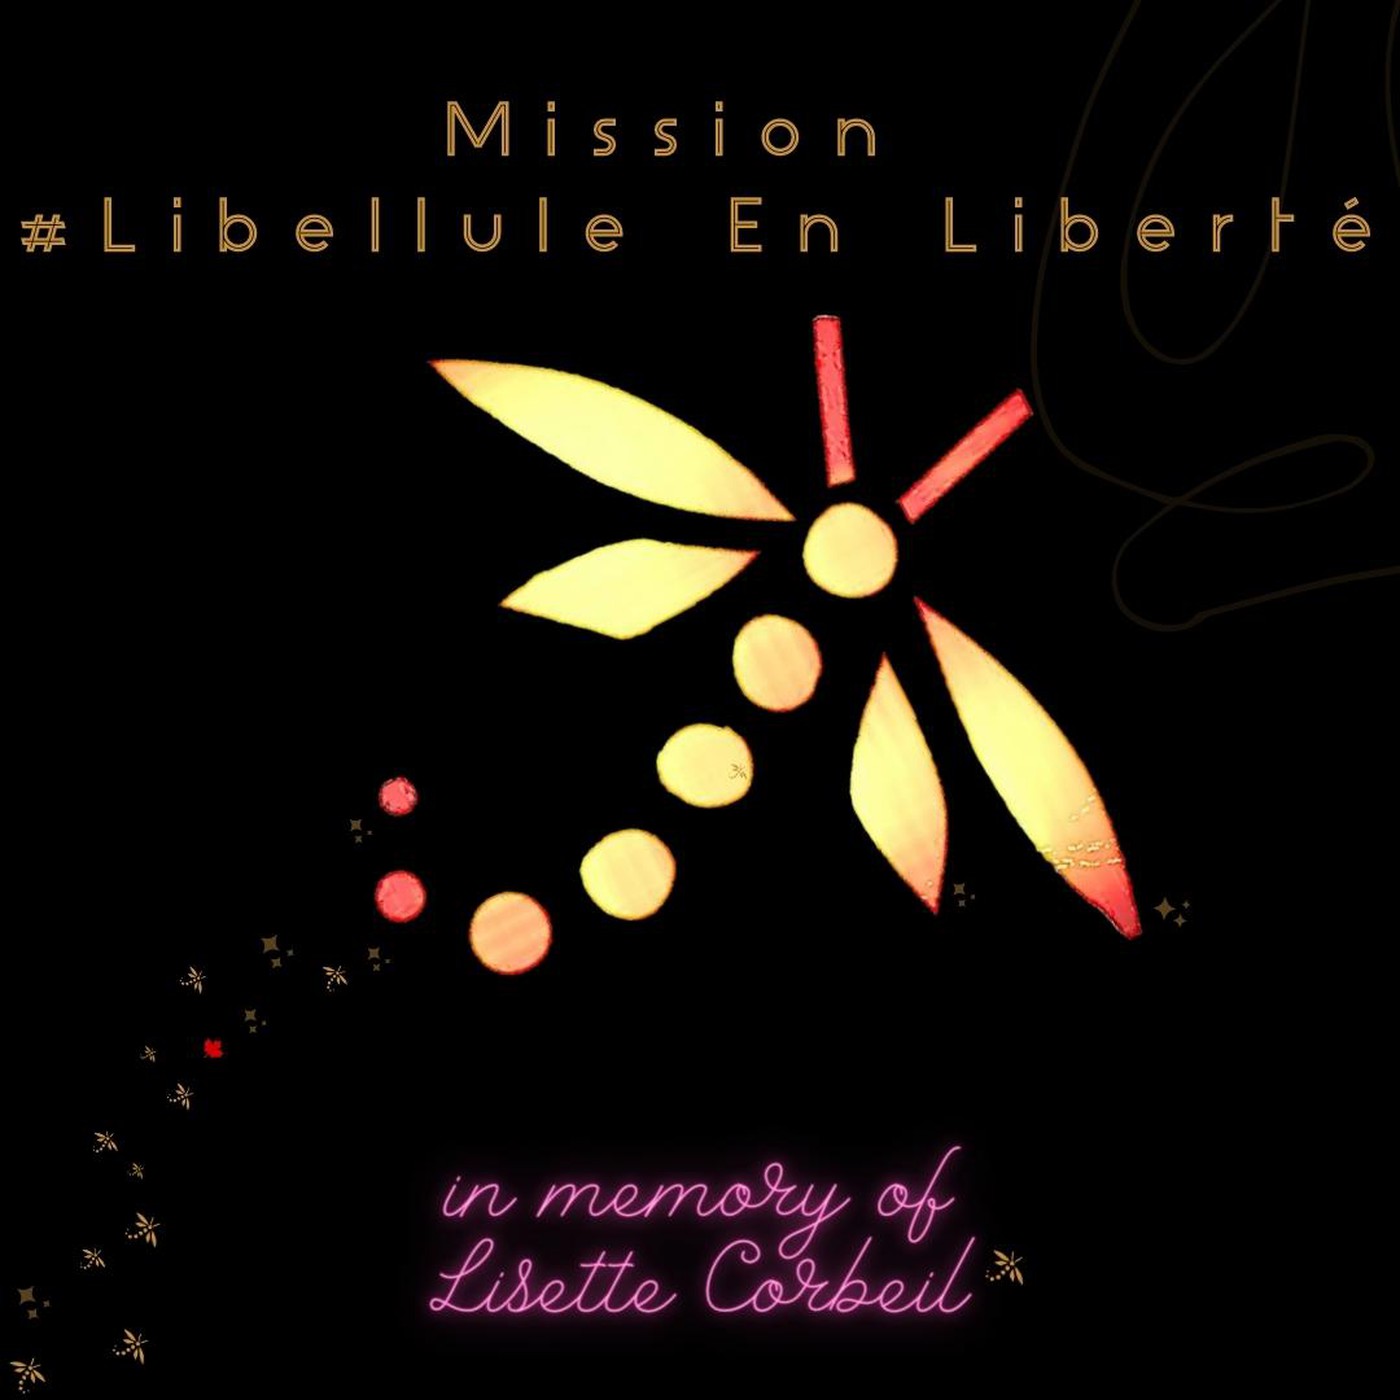 In Memory of Lisette Corbeil